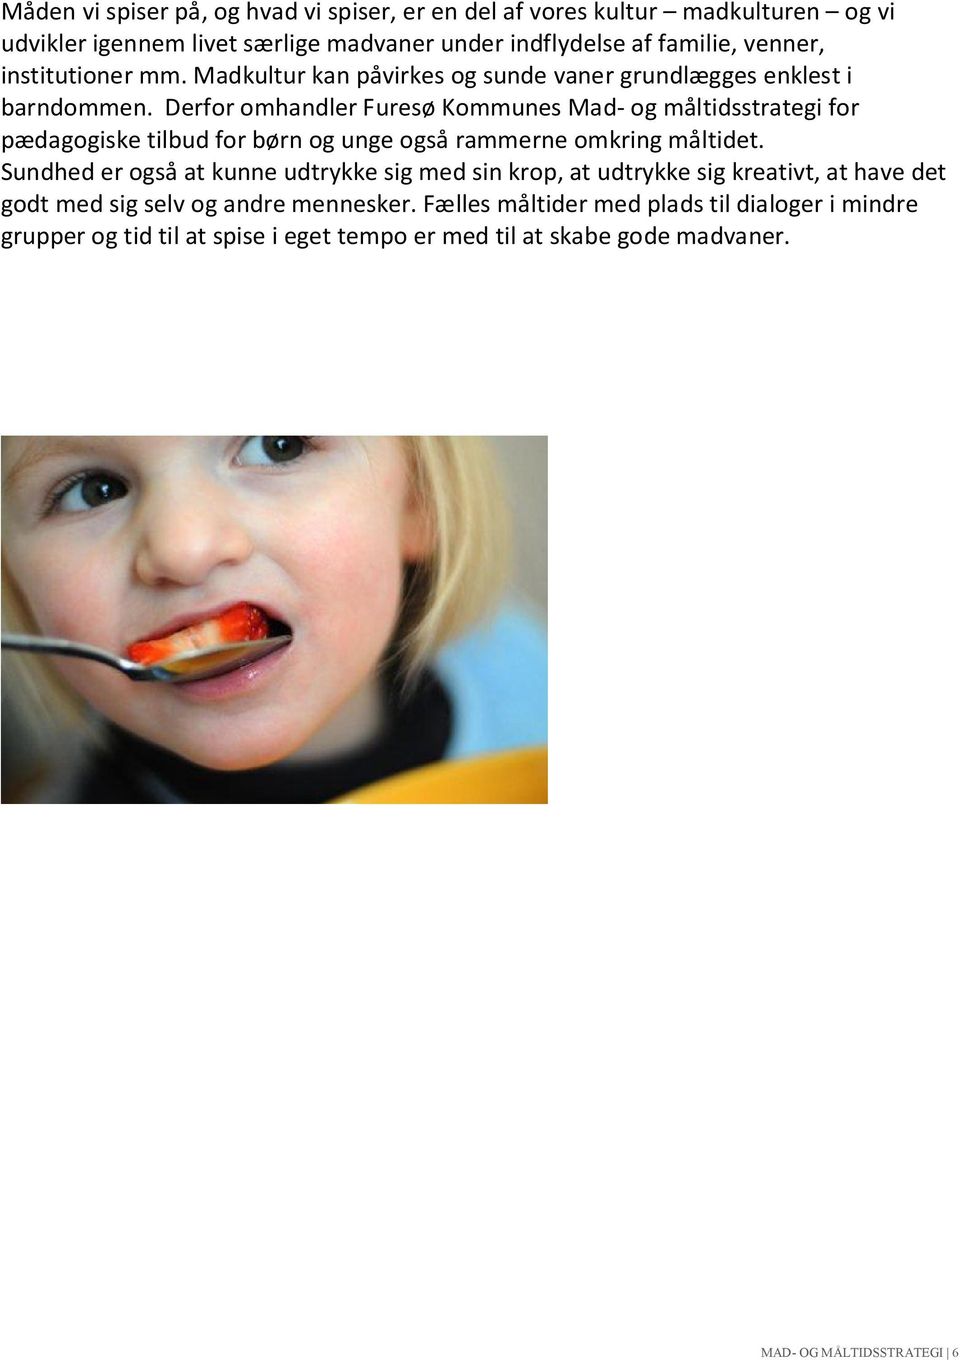 Derfor omhandler Furesø Kommunes Mad- og måltidsstrategi for pædagogiske tilbud for børn og unge også rammerne omkring måltidet.